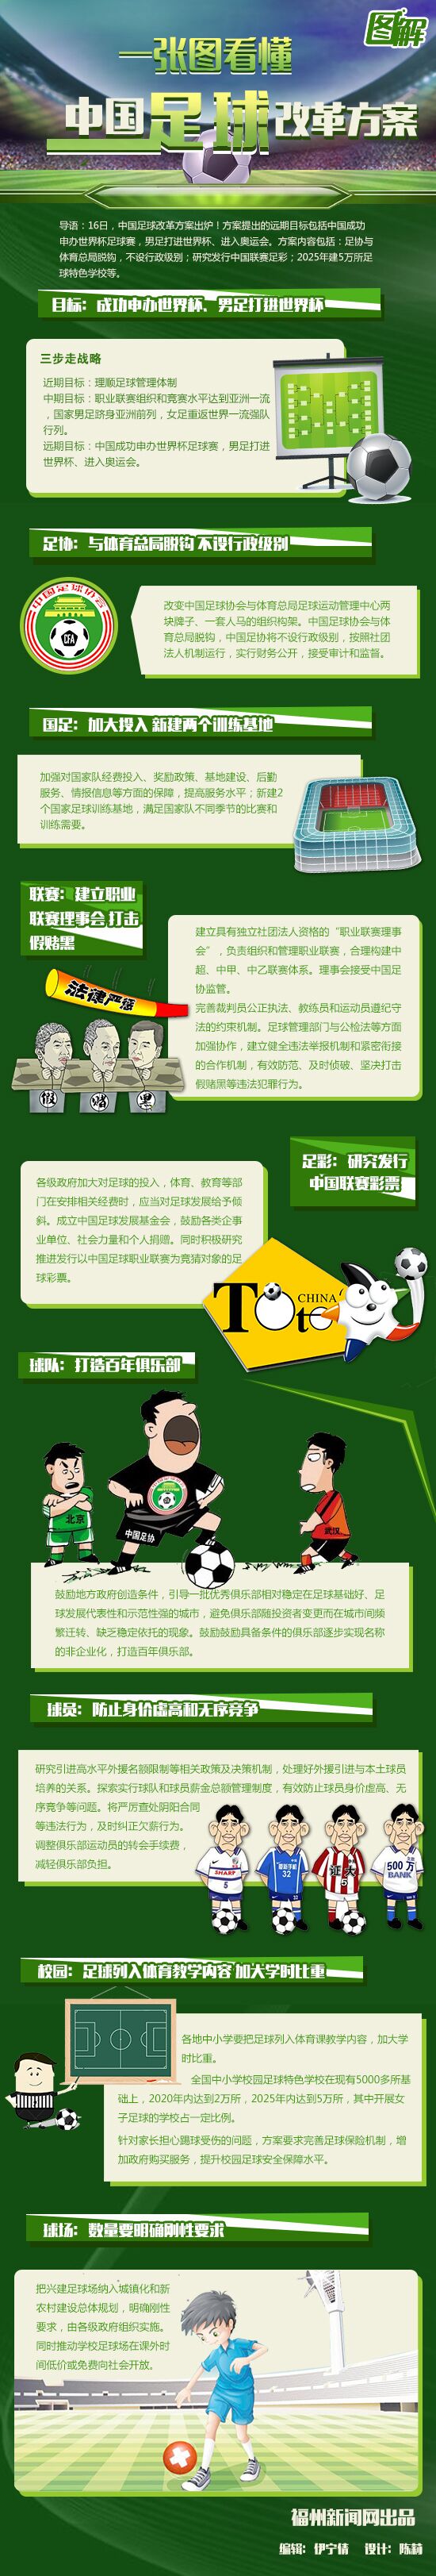 一张图看懂中国足球改革方案